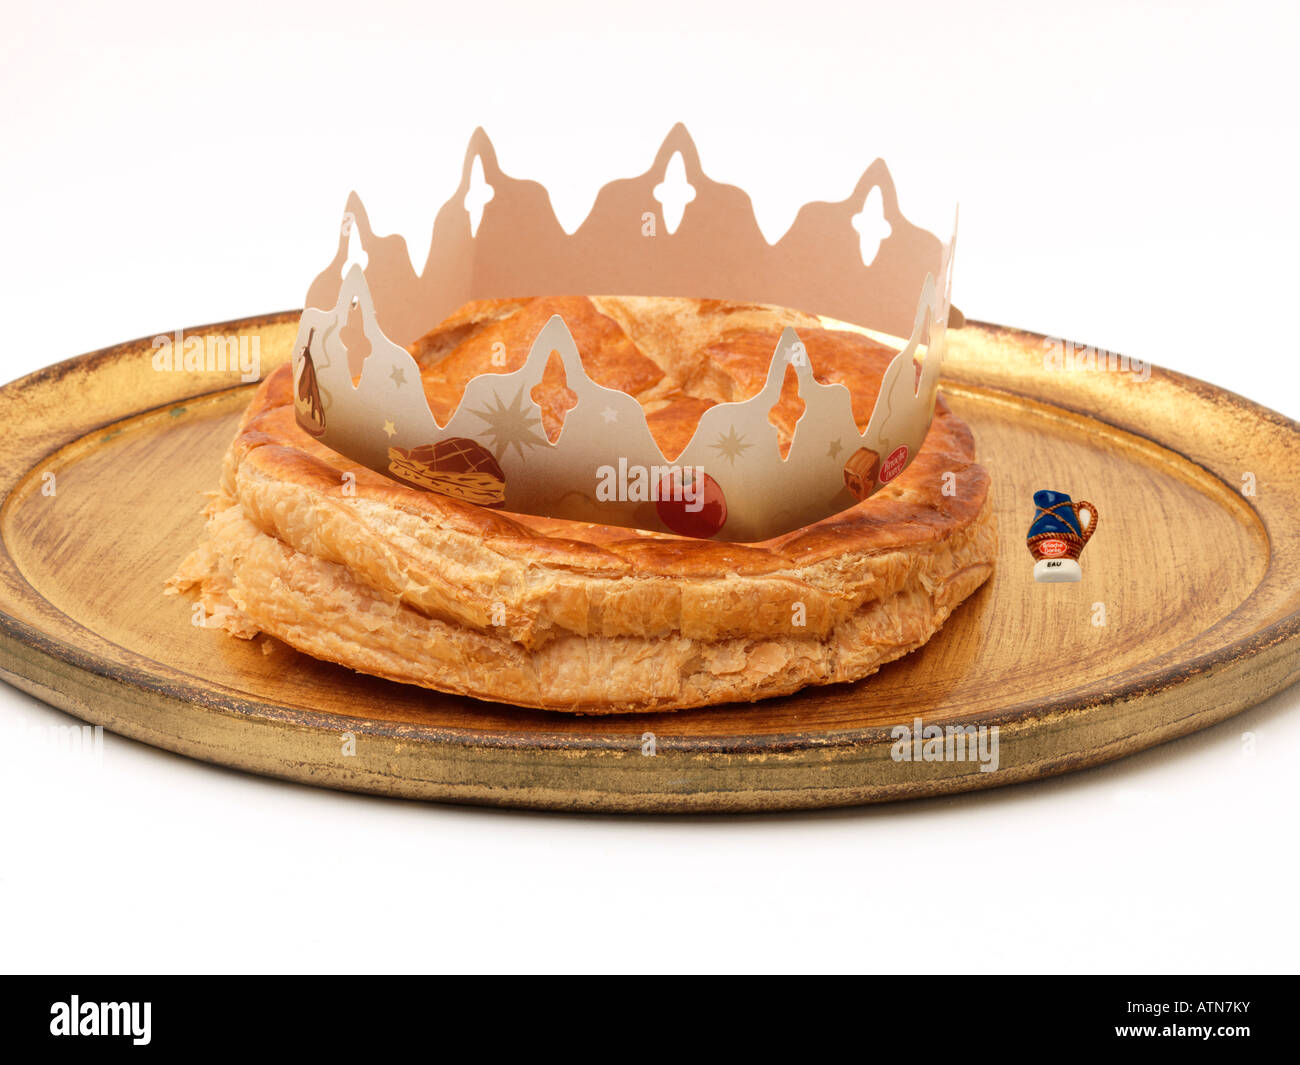 La Galette des Rois (gâteau français du roi) avec FEVE et couronne habituellement partagée sur l'Epiphanie pour célébrer l'arrivée des trois Sages à Bethléem Banque D'Images